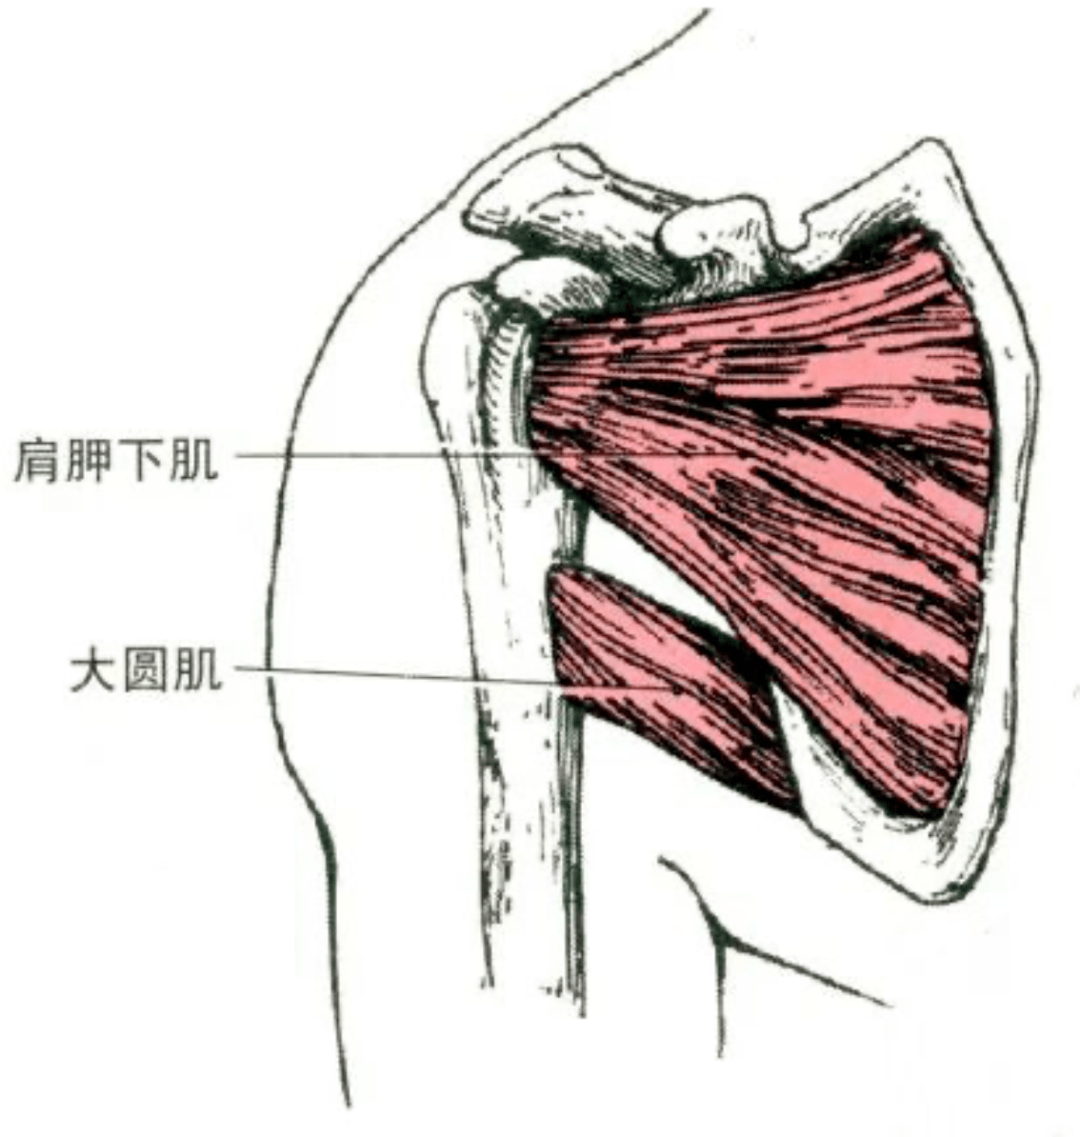 起点:肩胛下窝. 止点:肱骨小结节.